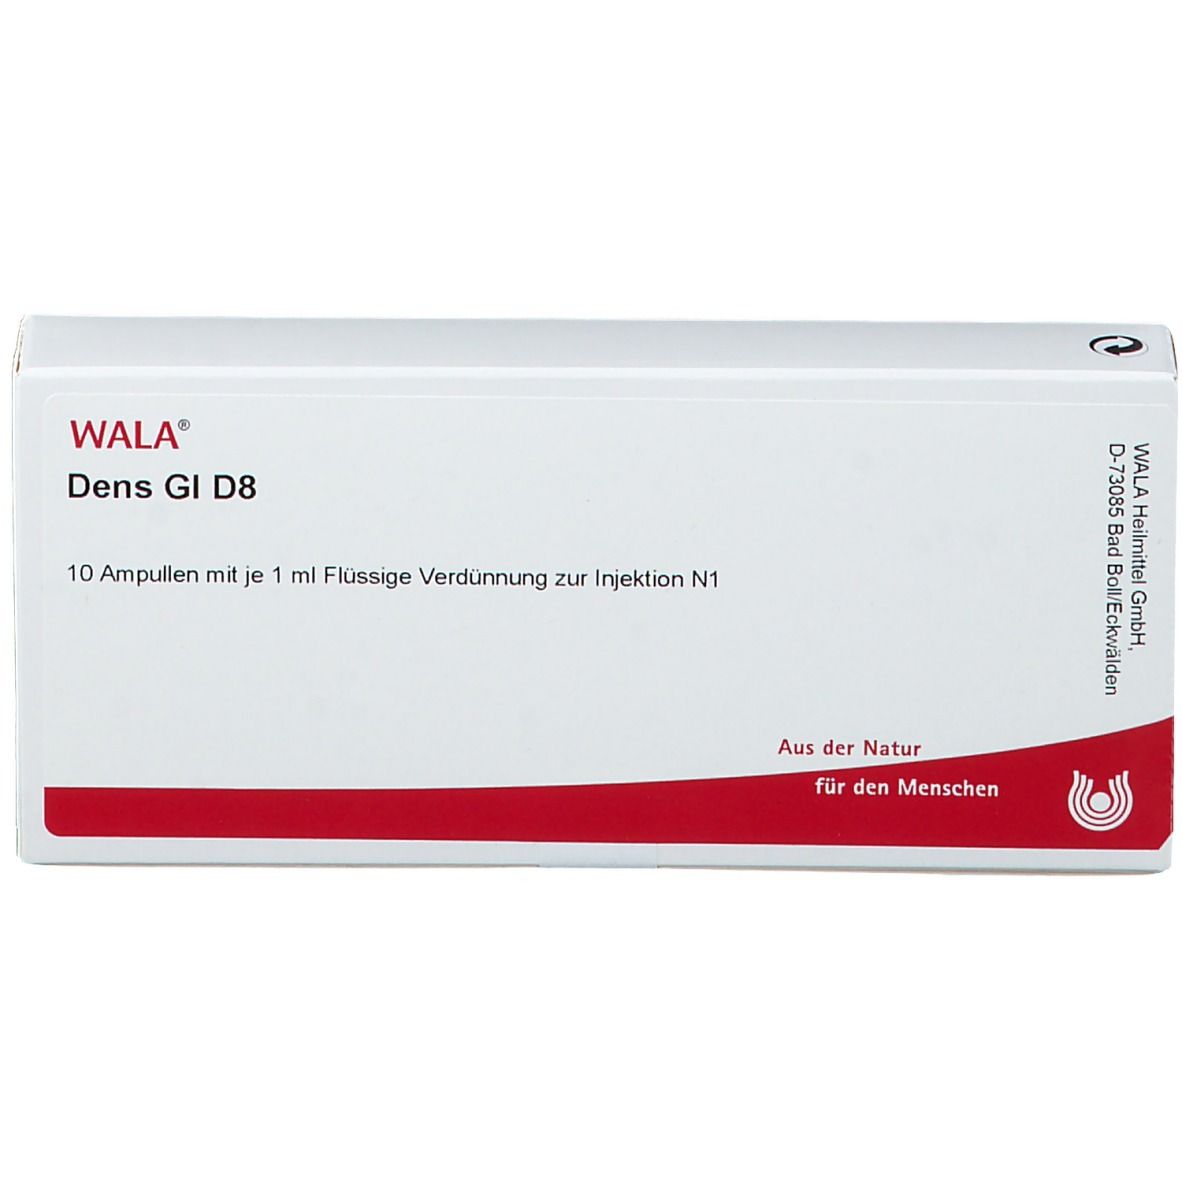 WALA® Dens Gl D 8